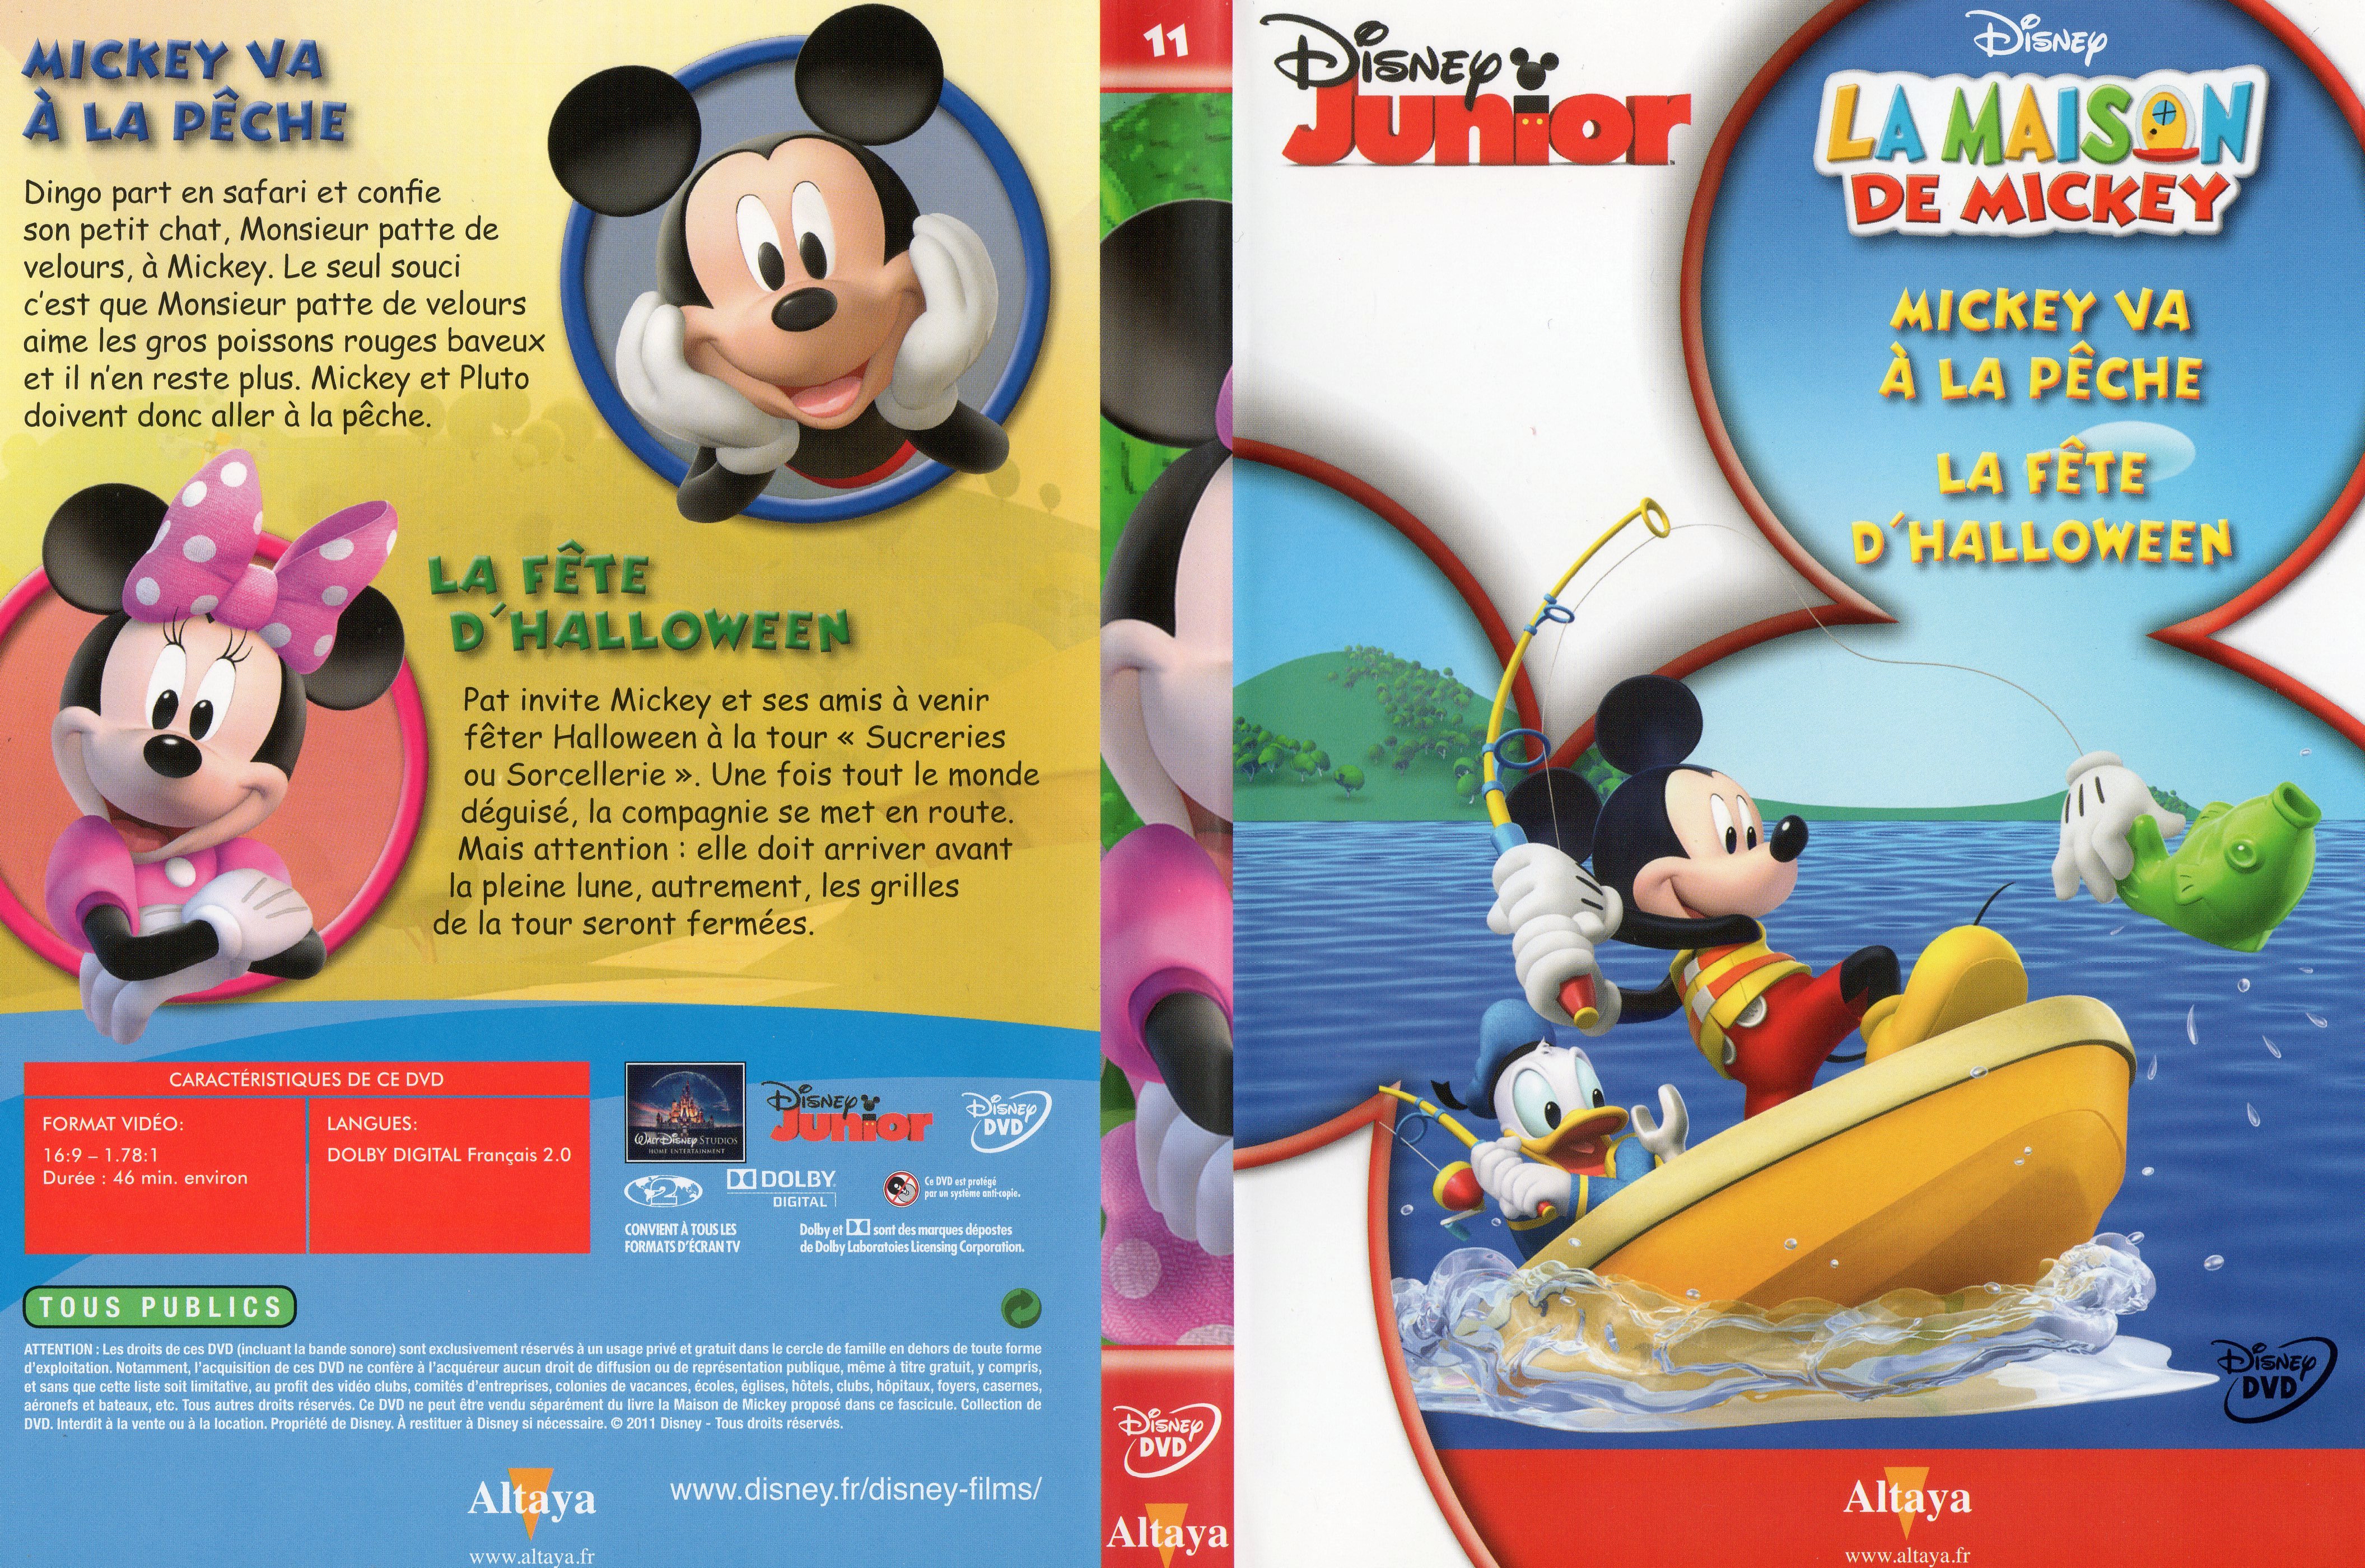 Jaquette DVD La maison de Mickey DVD 11